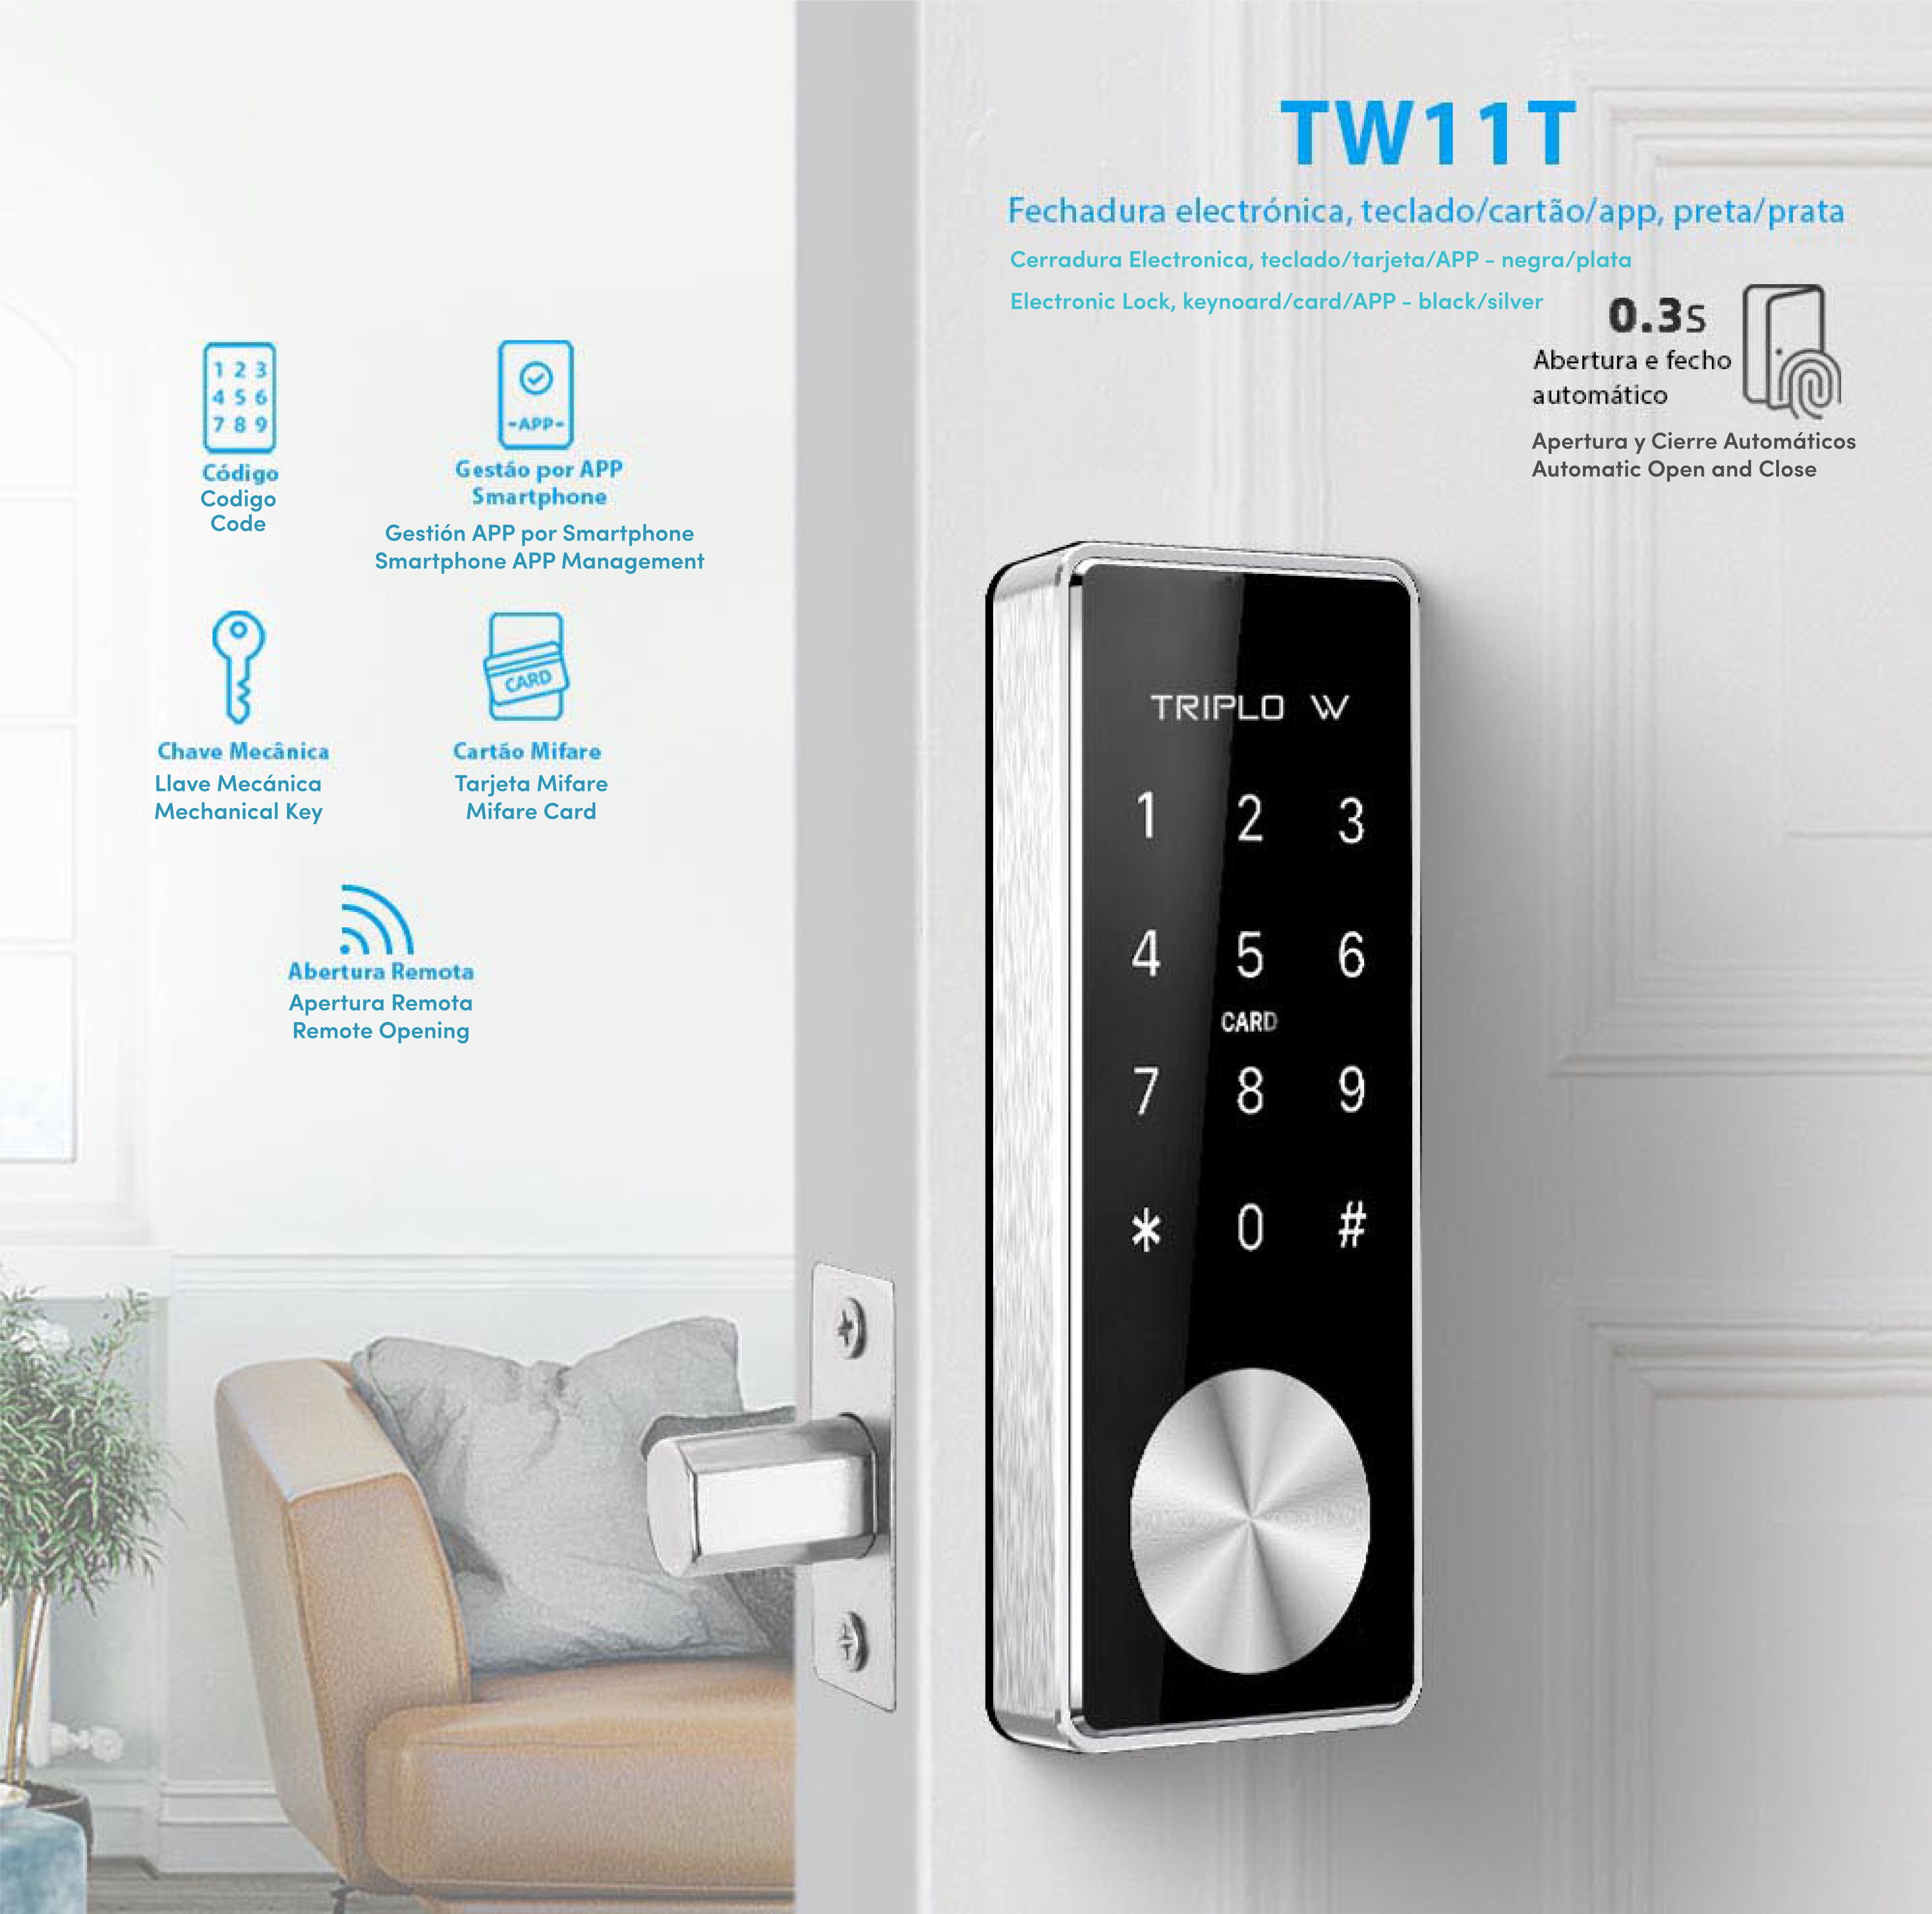 TW11T  - Apresentação da fechadura electrónica TW11T, com animação